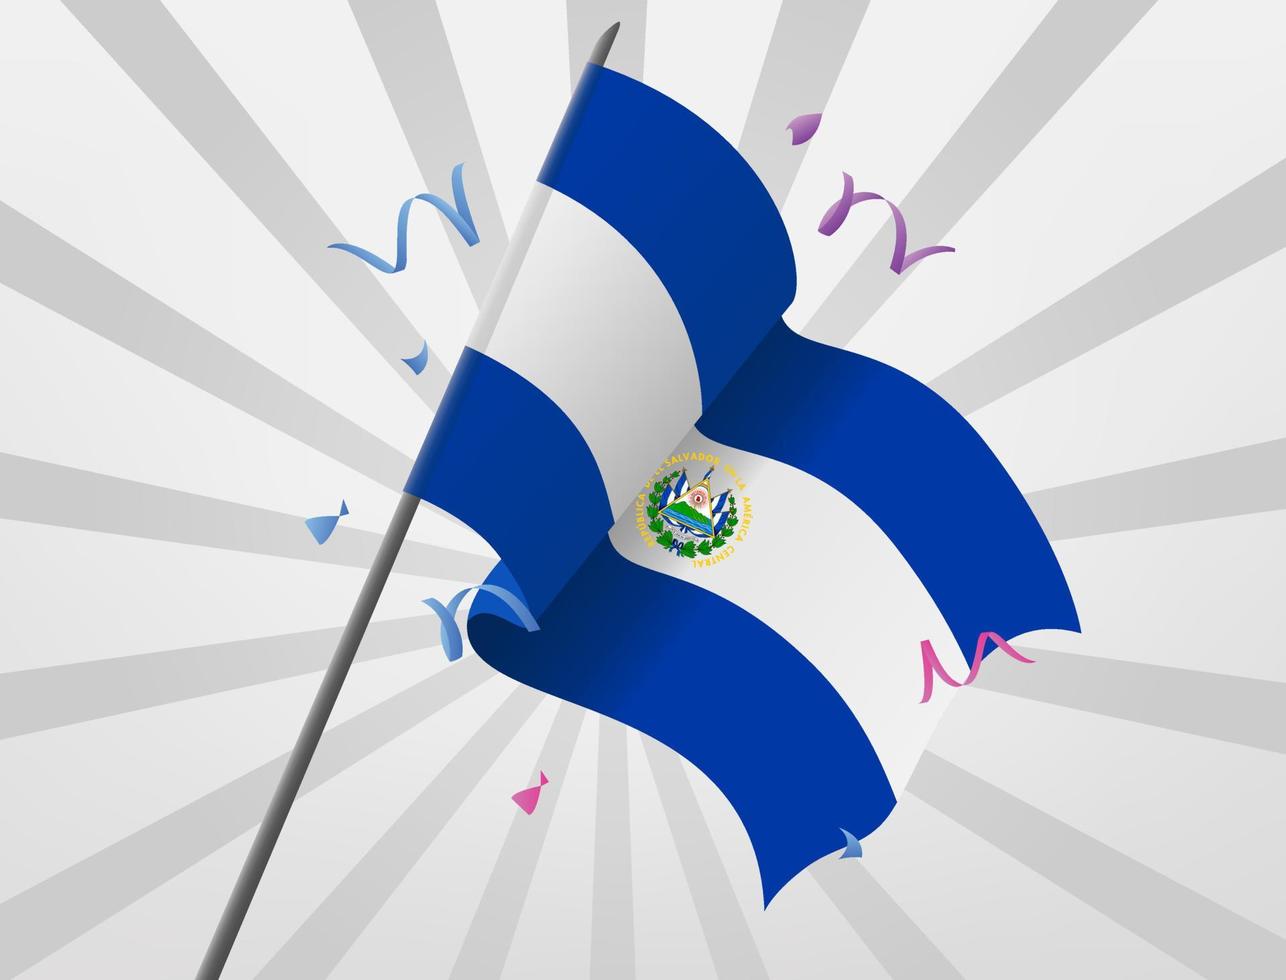 den festliga flaggan för landet Salvador vajar på hög höjd vektor